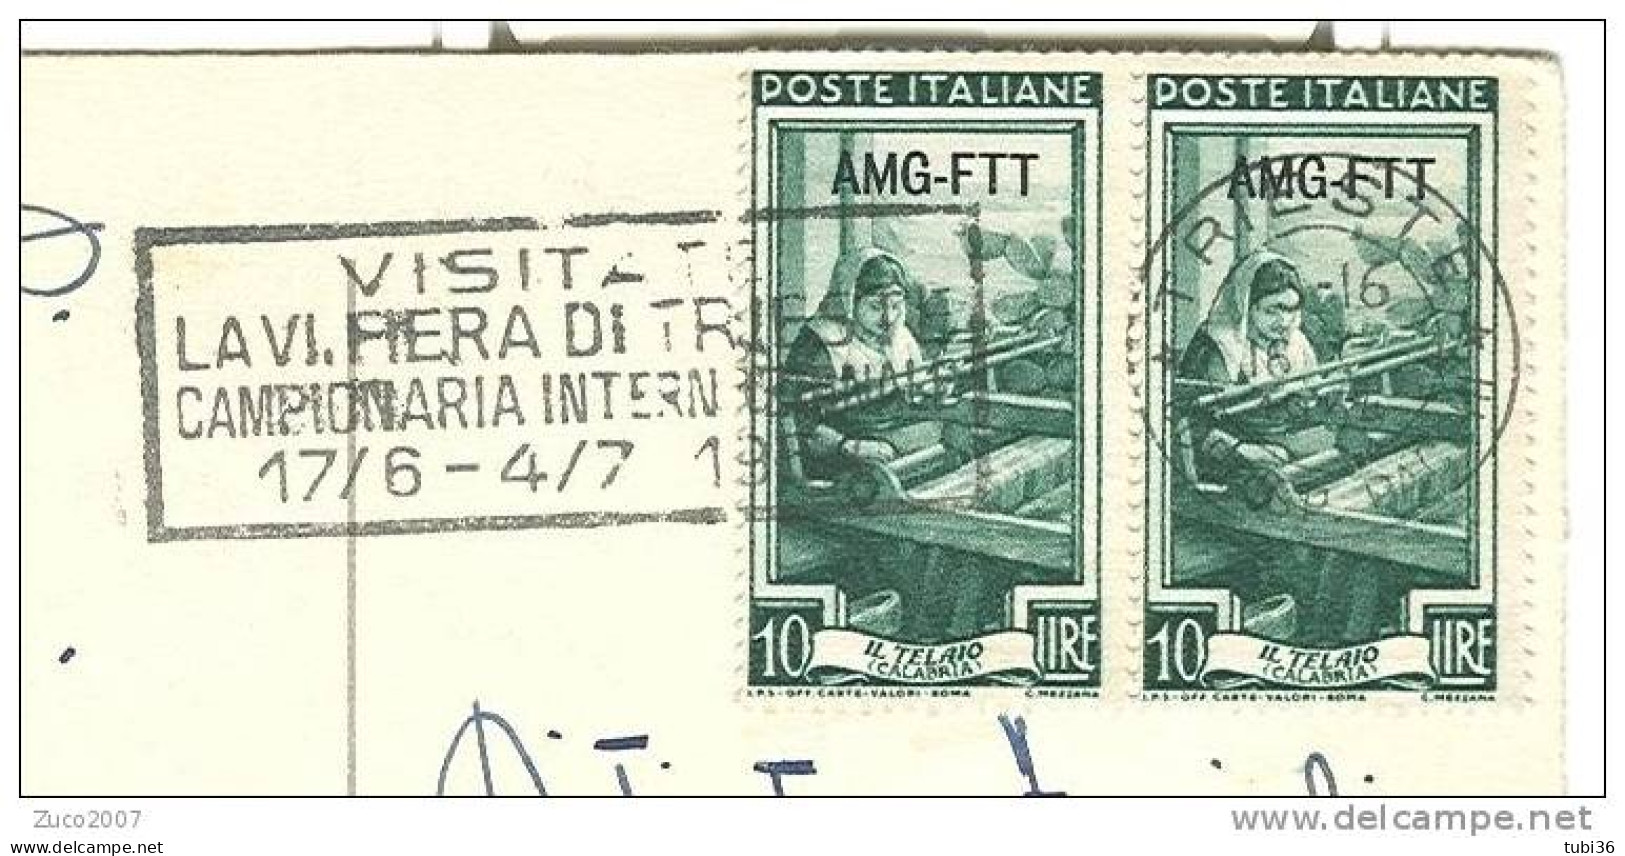 AFFRANCATURA ITALIA LAVORO AMF-FTT £.10 X 2 - CON TMBRO TRIESTE  E TARGHETTA  VISITATE LA FIERA DI TRIESTE  1954. - Marcofilie